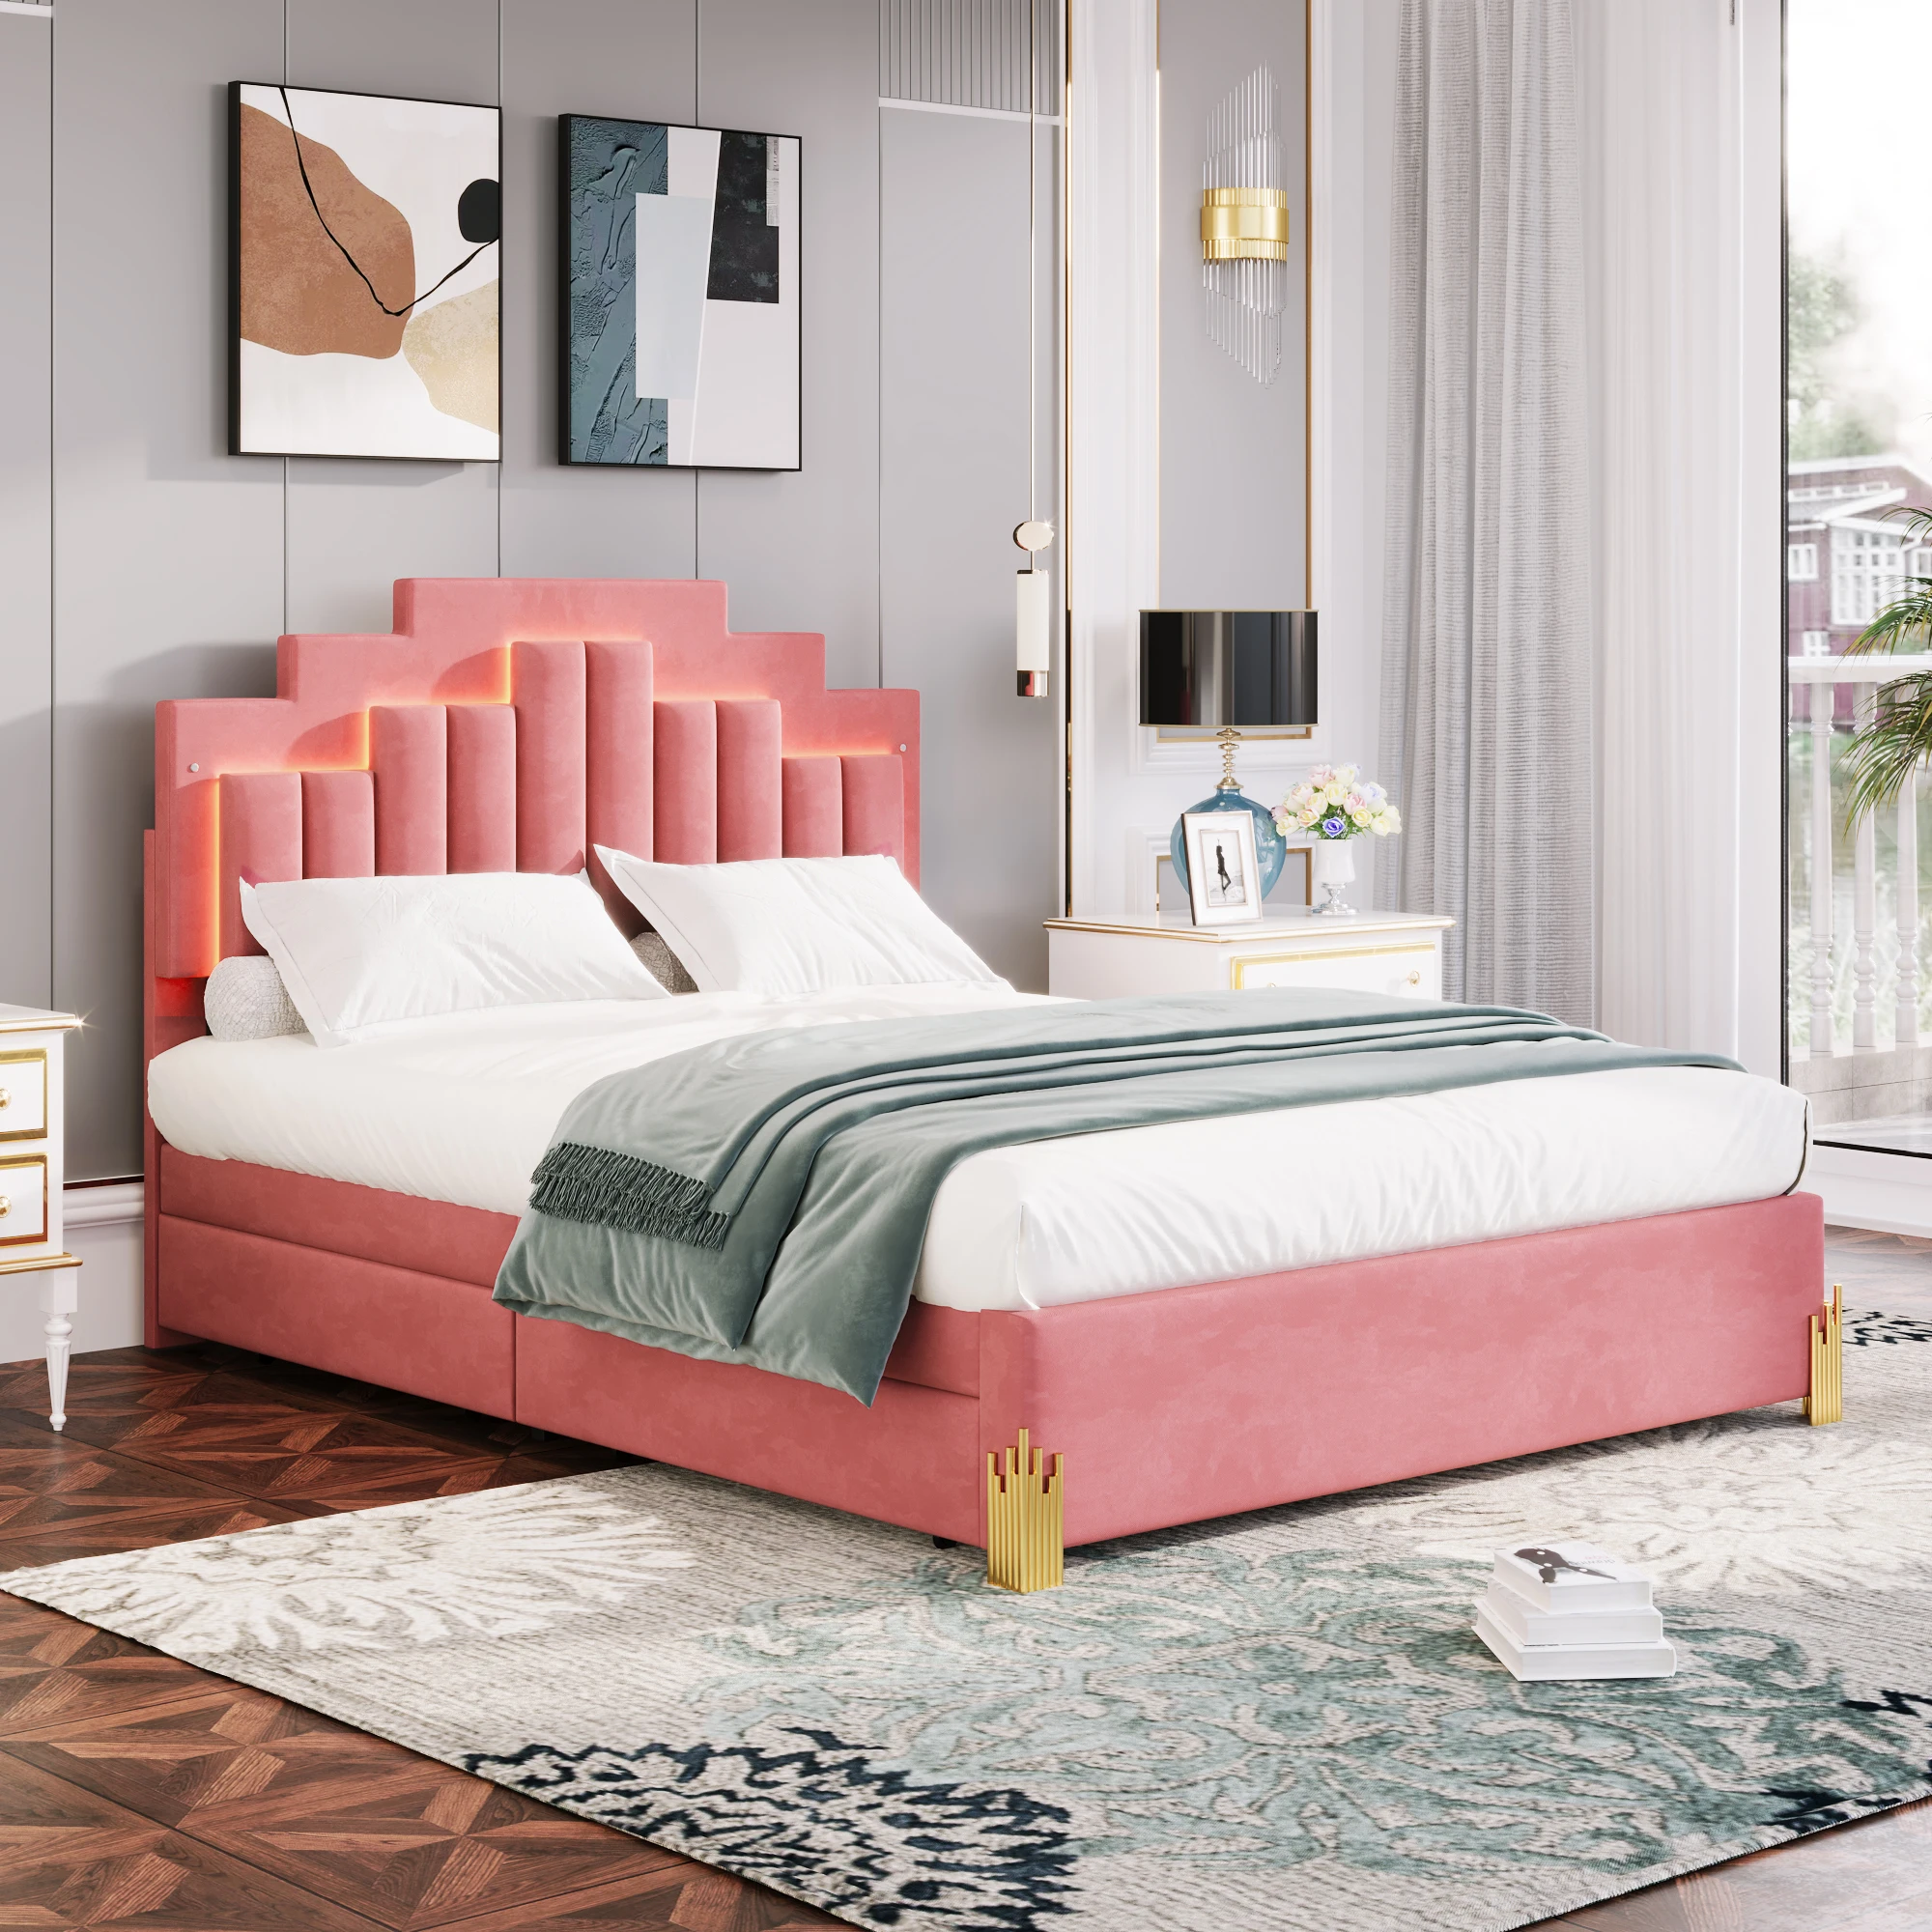 

Двуспальная кровать с мягкой платформой со светодиодной подсветкой и 4 выдвижными ящиками, стильный нестандартный дизайн, розовый цвет